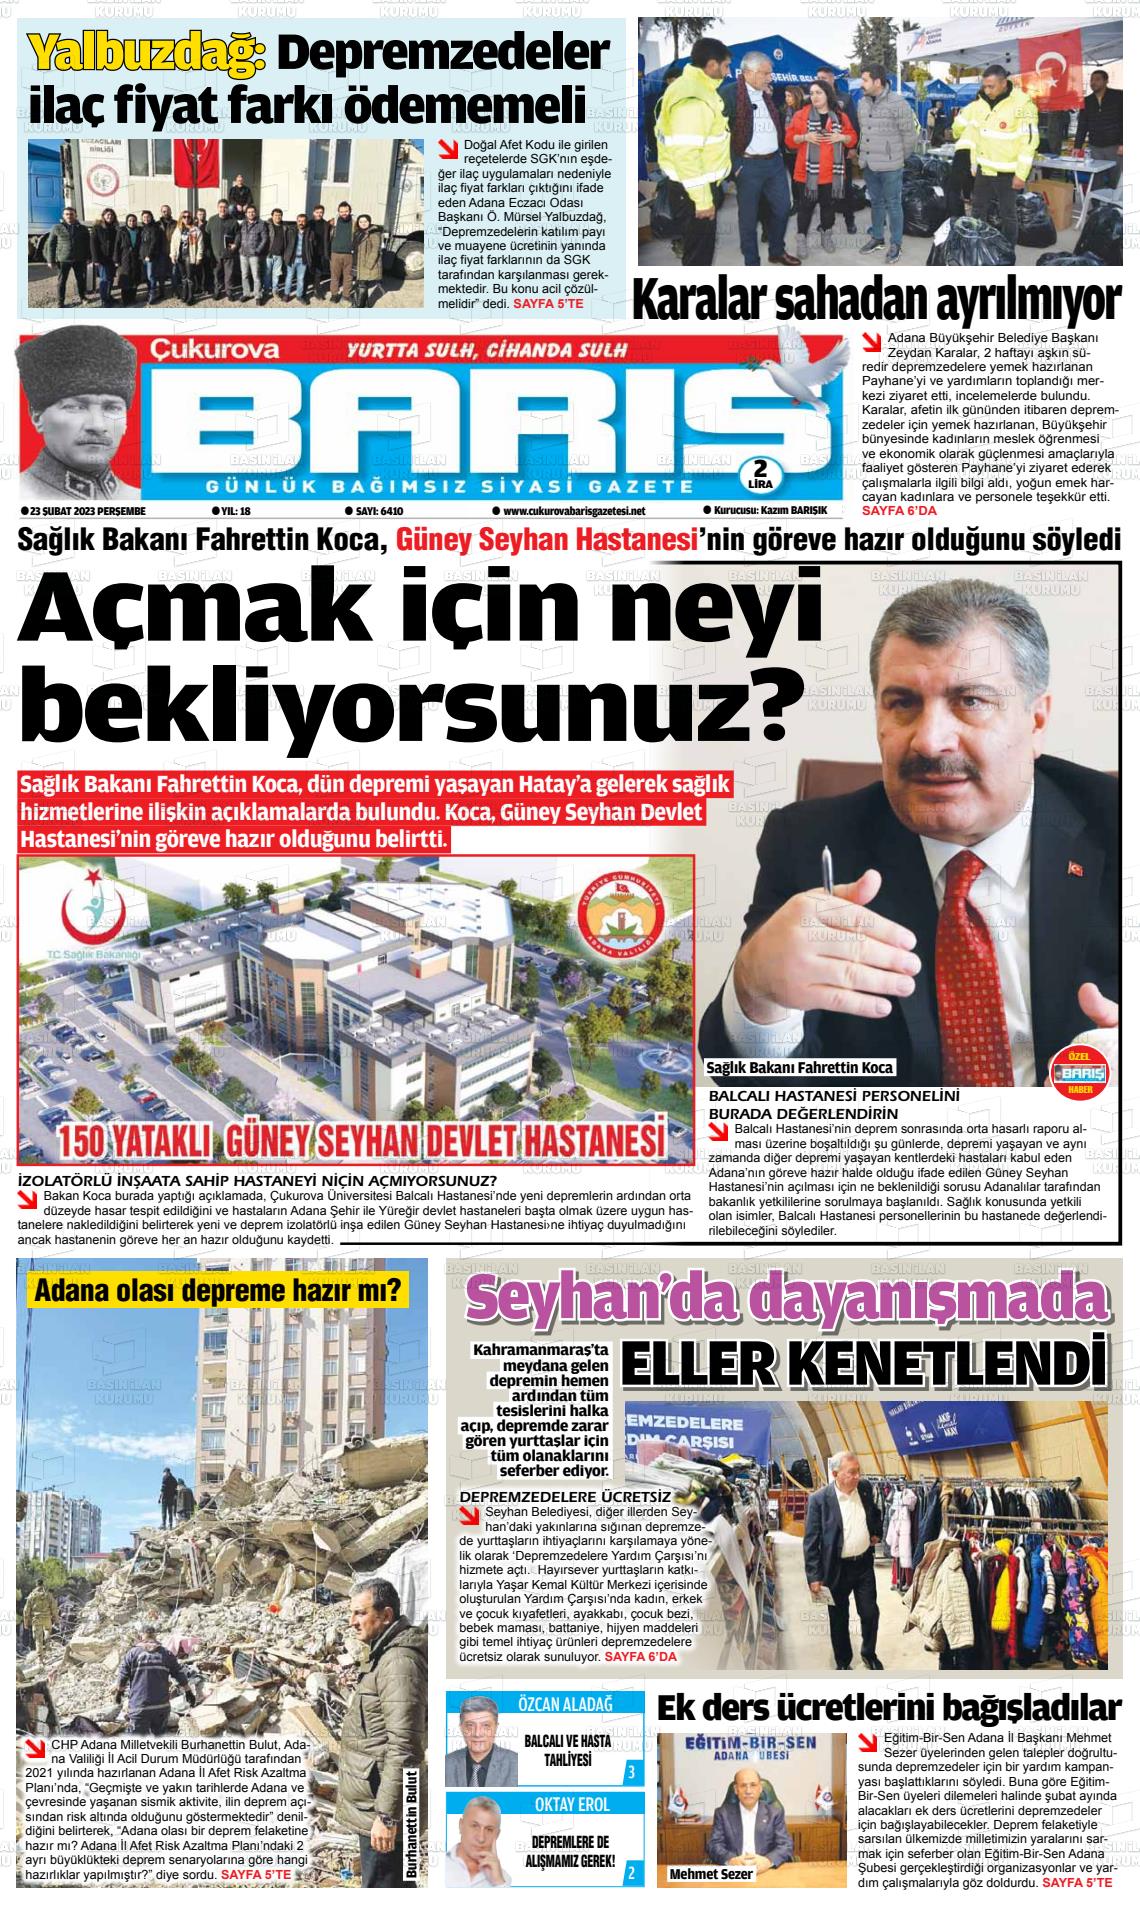 Fatih Erbakan Kocaeli'de miting yapacak - Kocaeli Barış Gazetesi